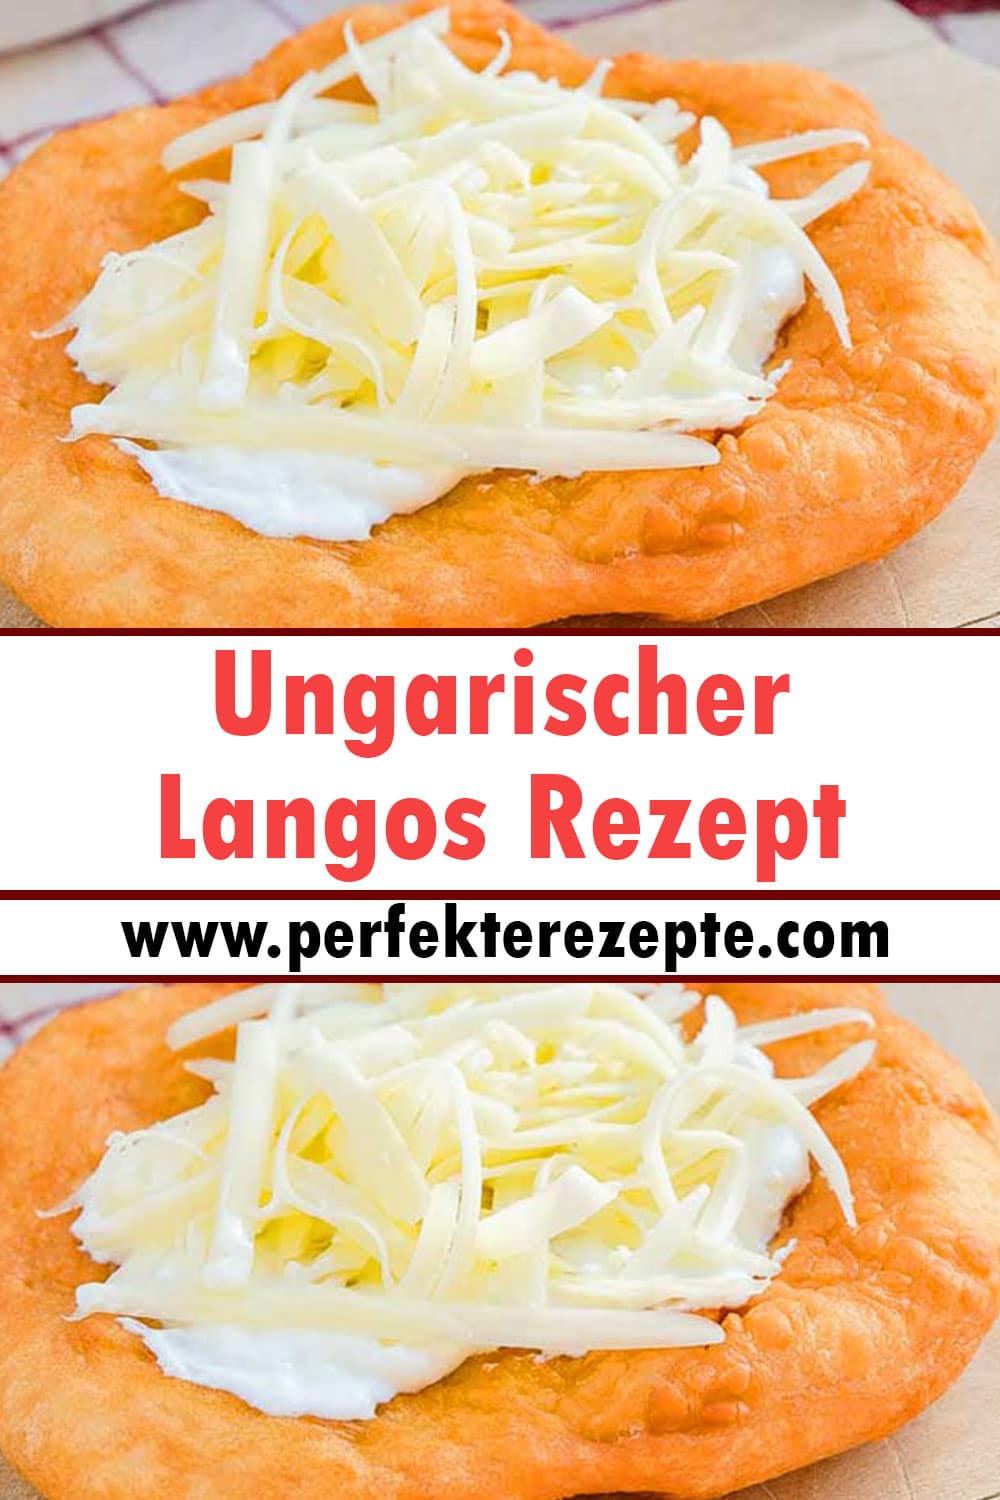 Ungarischer Langos Rezept